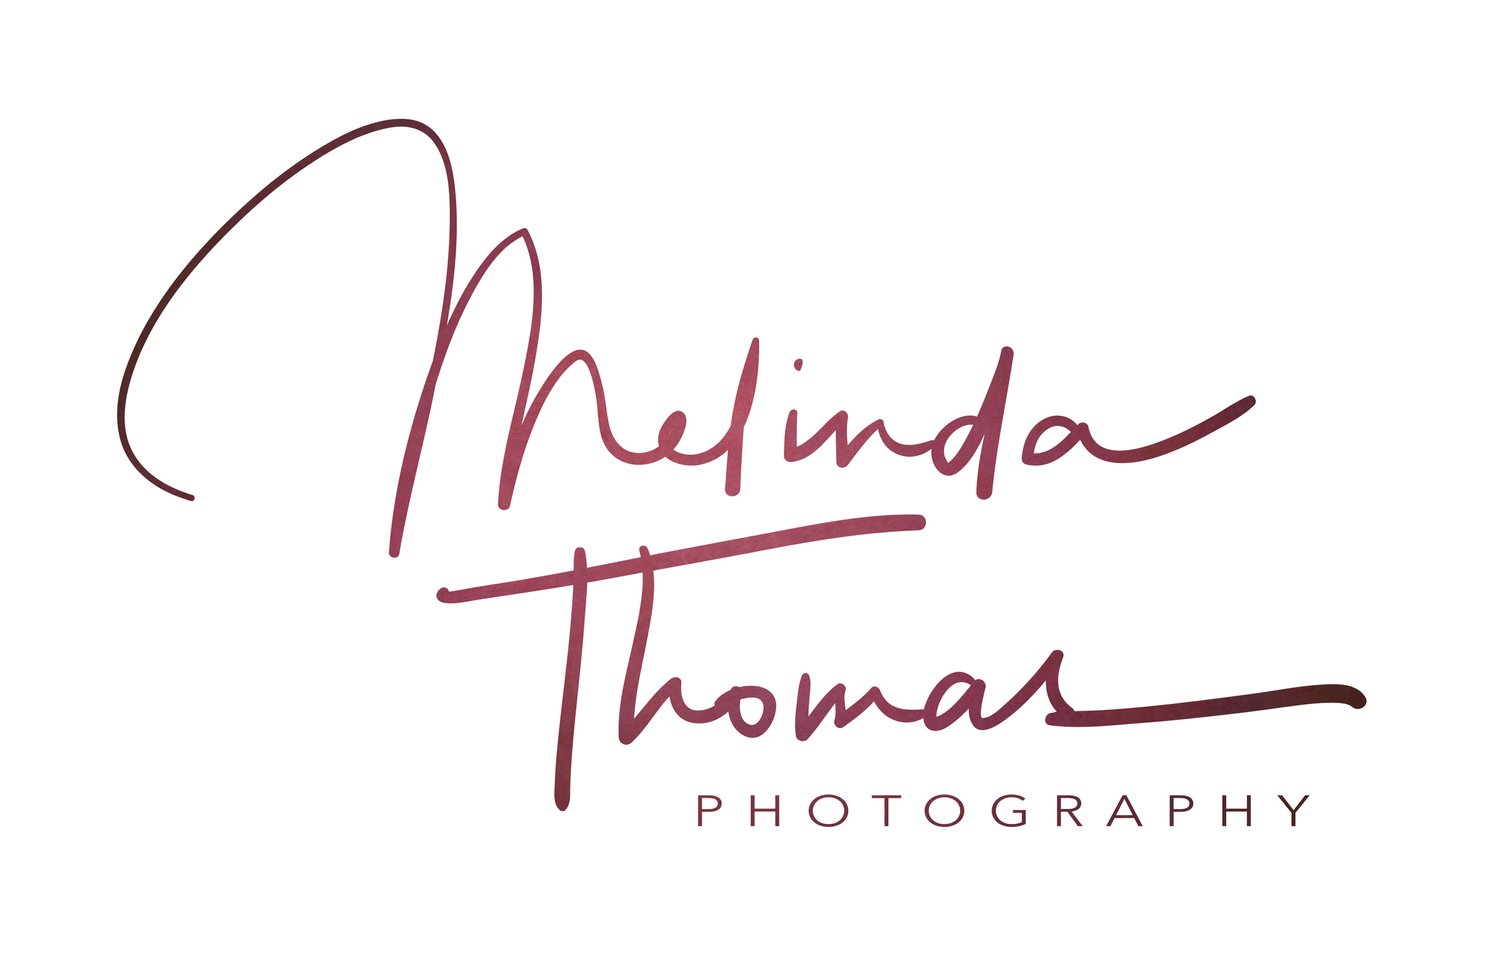 Hobart Photographer | Melinda Thomas Photography